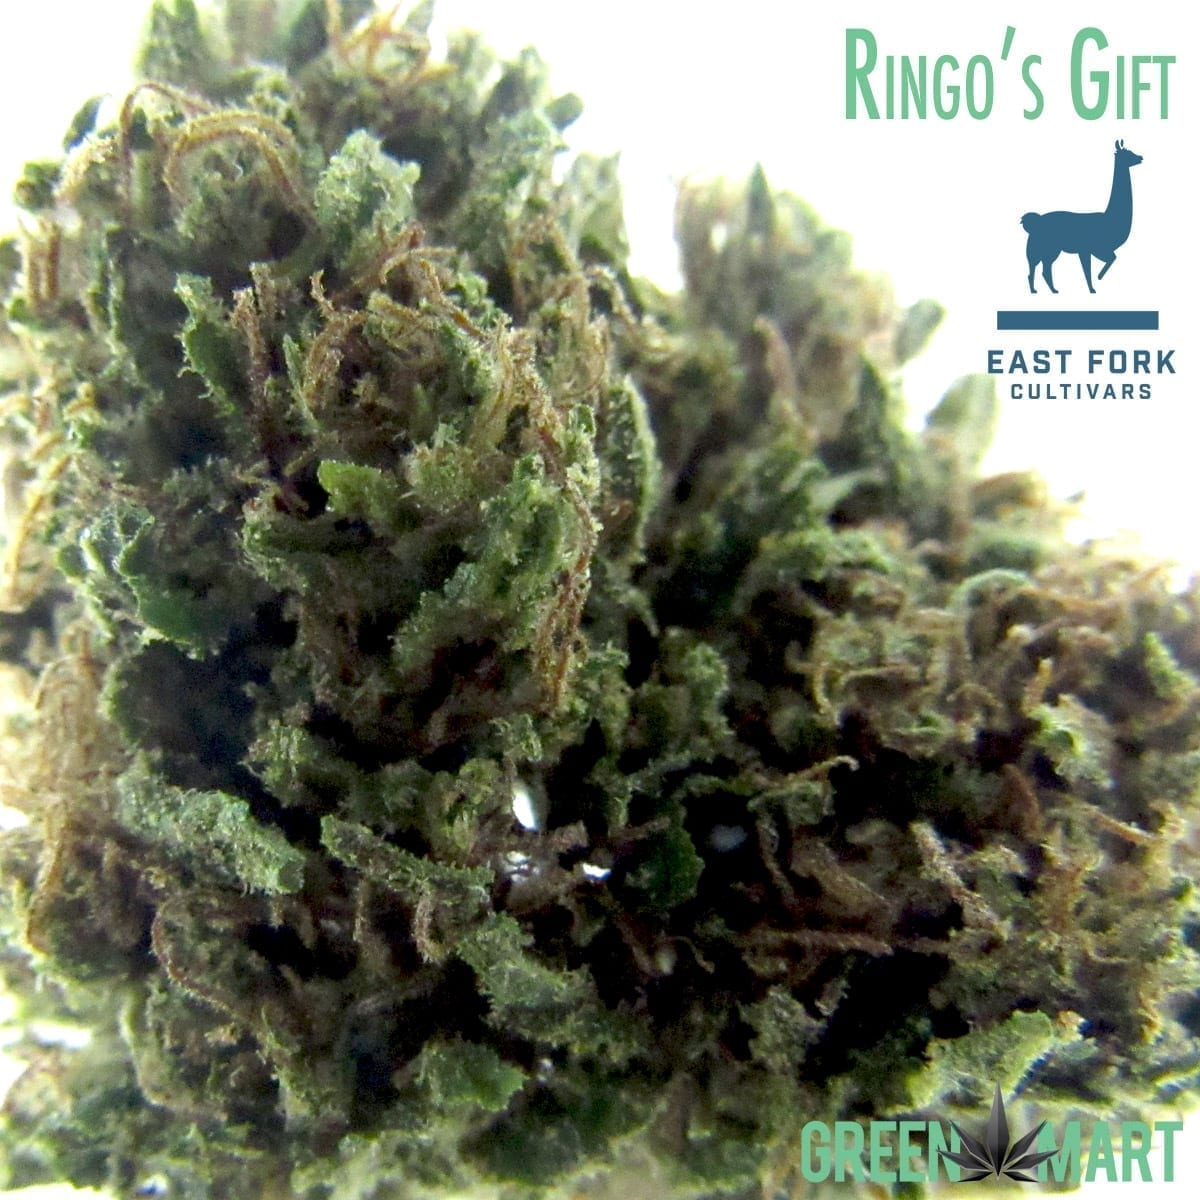 East Fork Cultivars Ringo's Gift